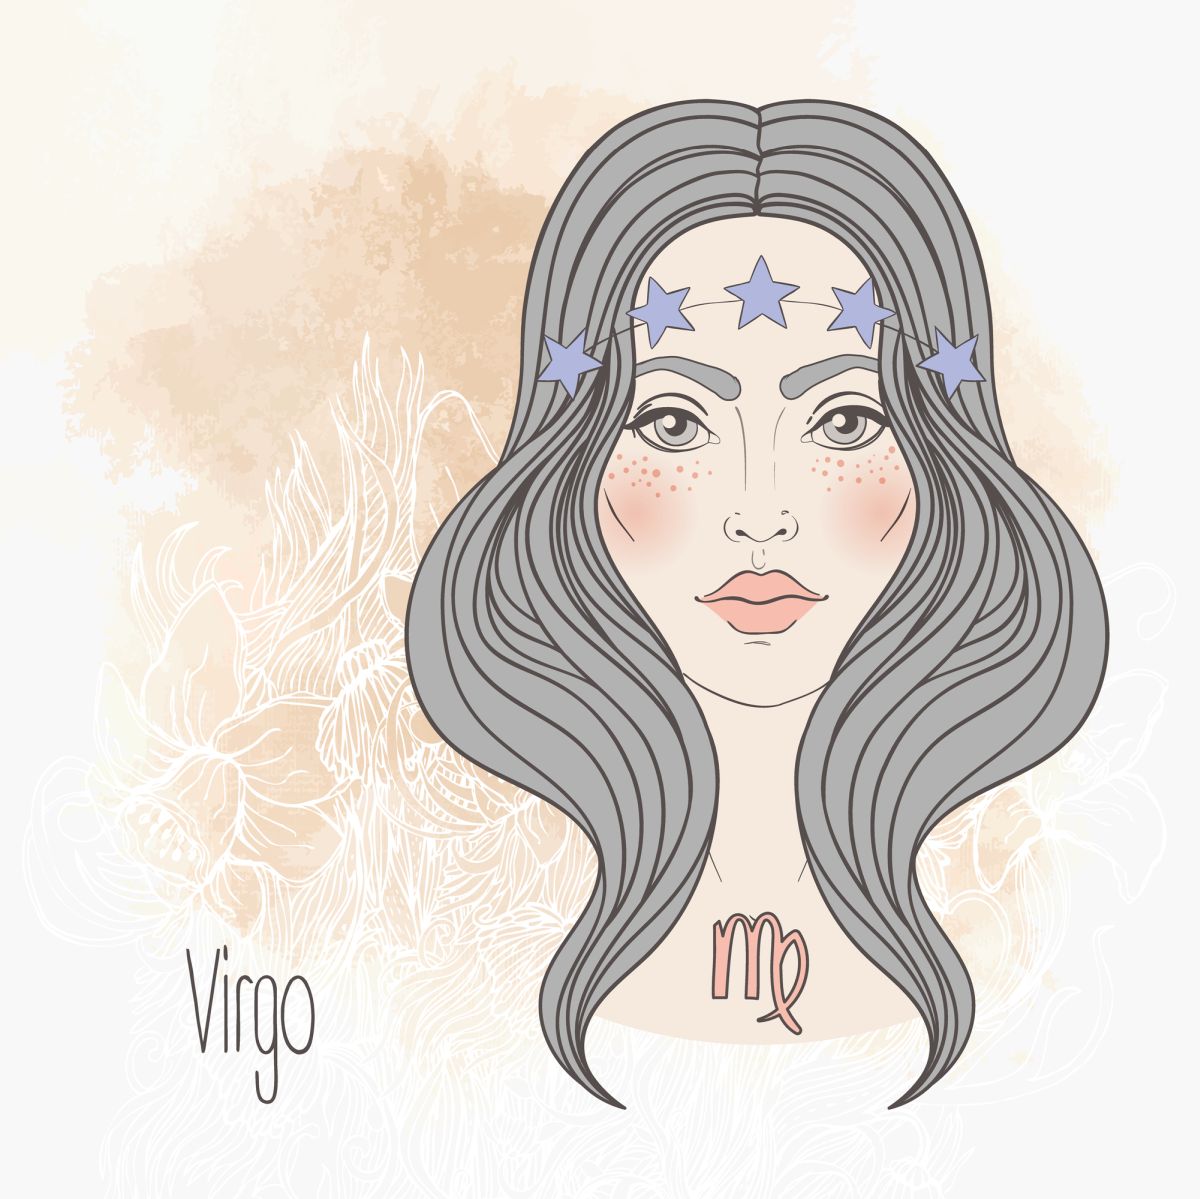 Ilustrația semnului zodiacal Fecioară sub forma unei femei frumoase, cu părul gri, așezat cu ajutorul unei bentițe cu steluțe albastre.